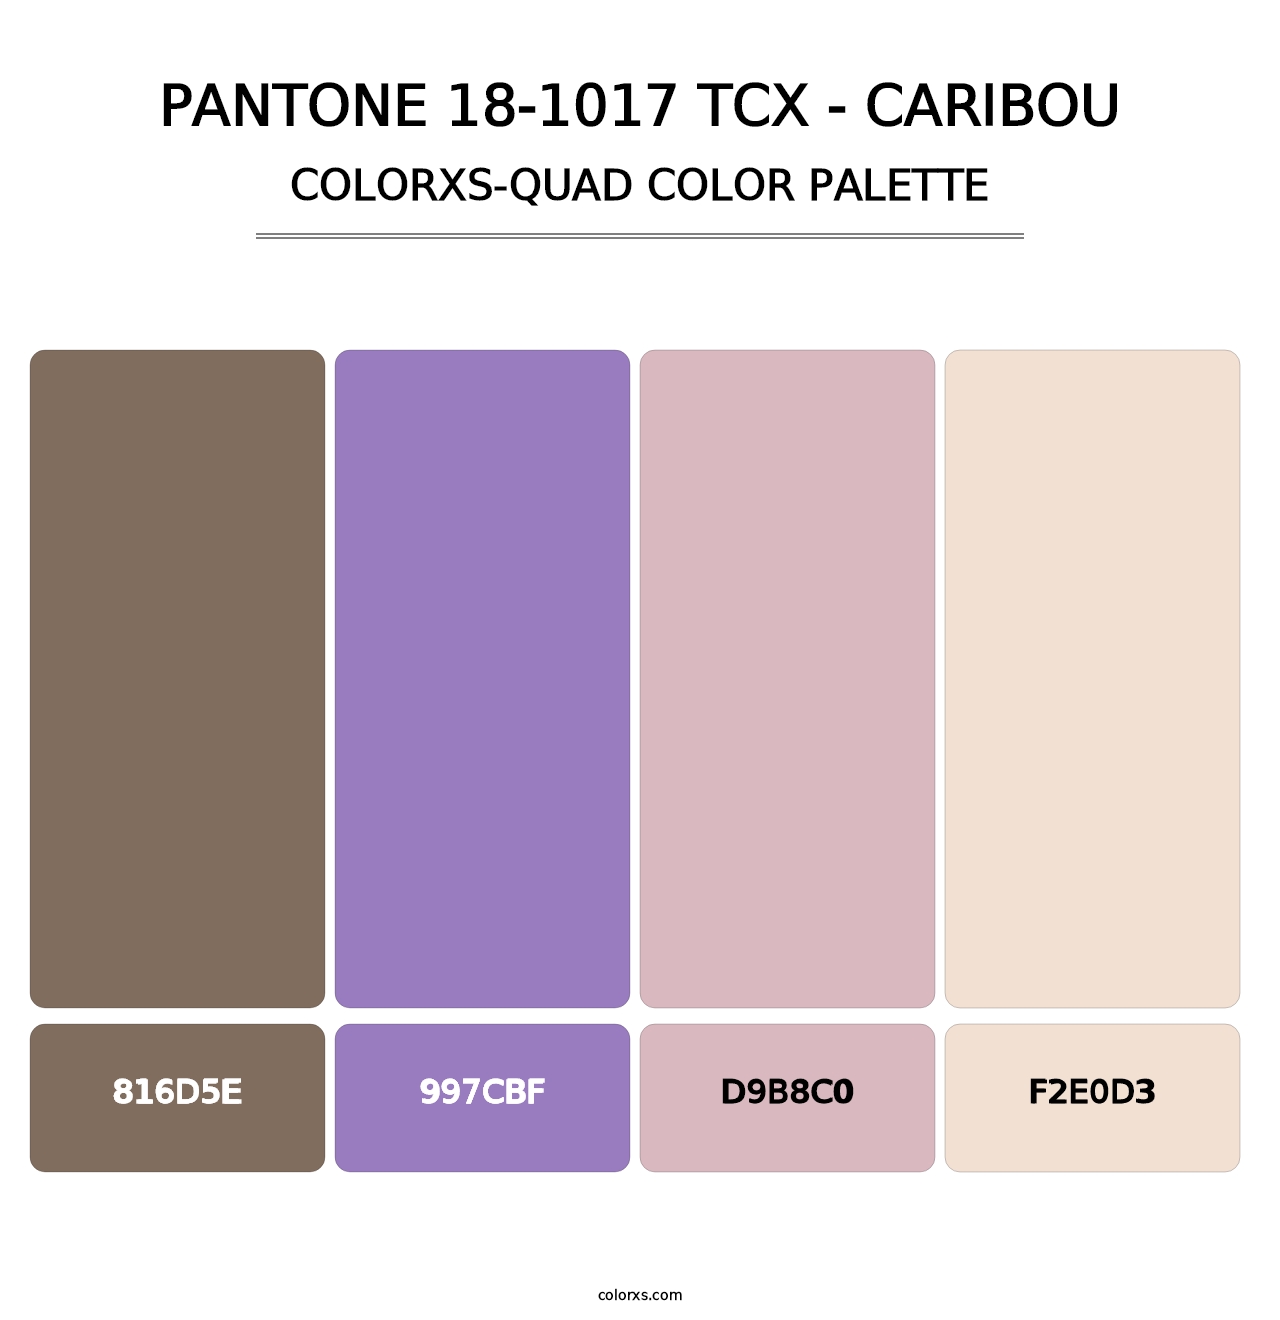 PANTONE 18-1017 TCX - Caribou - Colorxs Quad Palette